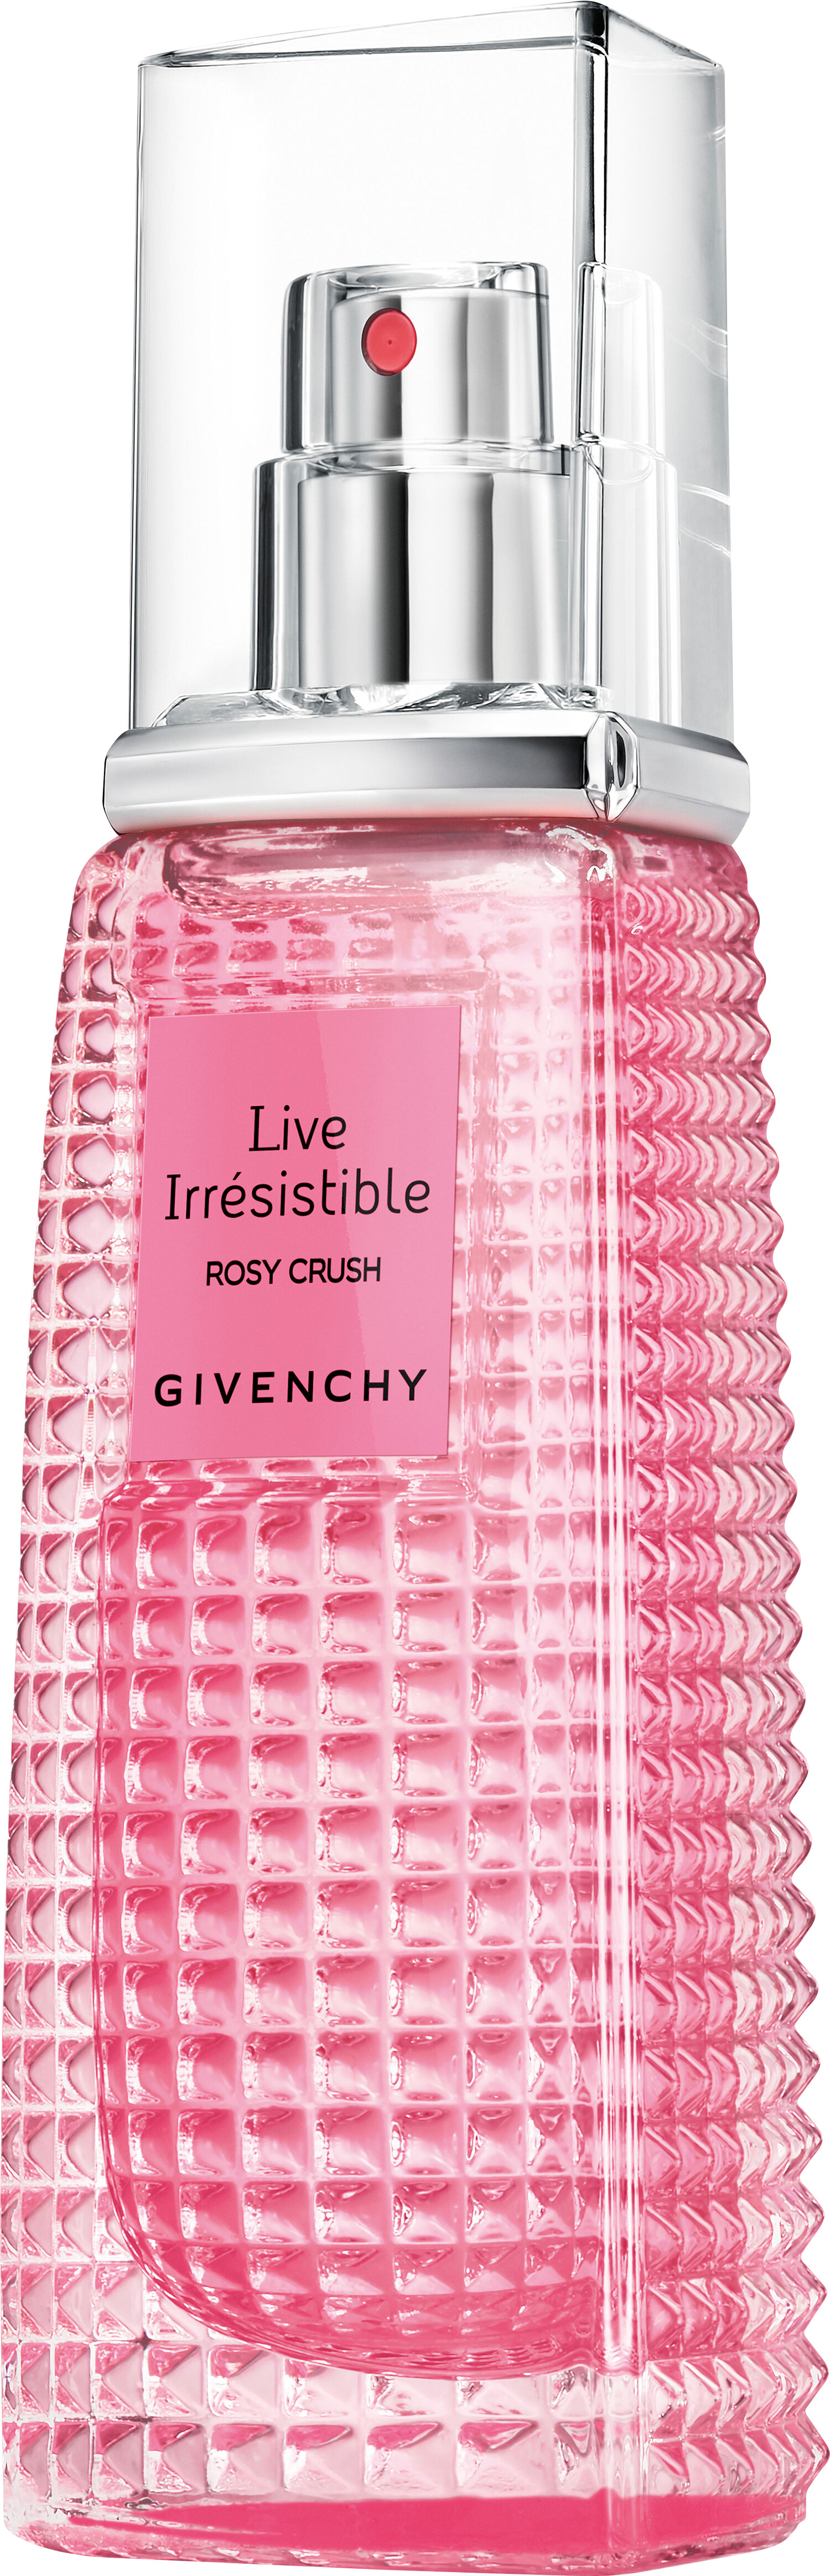 GIVENCHY Live Irresistible Rosy Crush Eau de Parfum Florale Spray